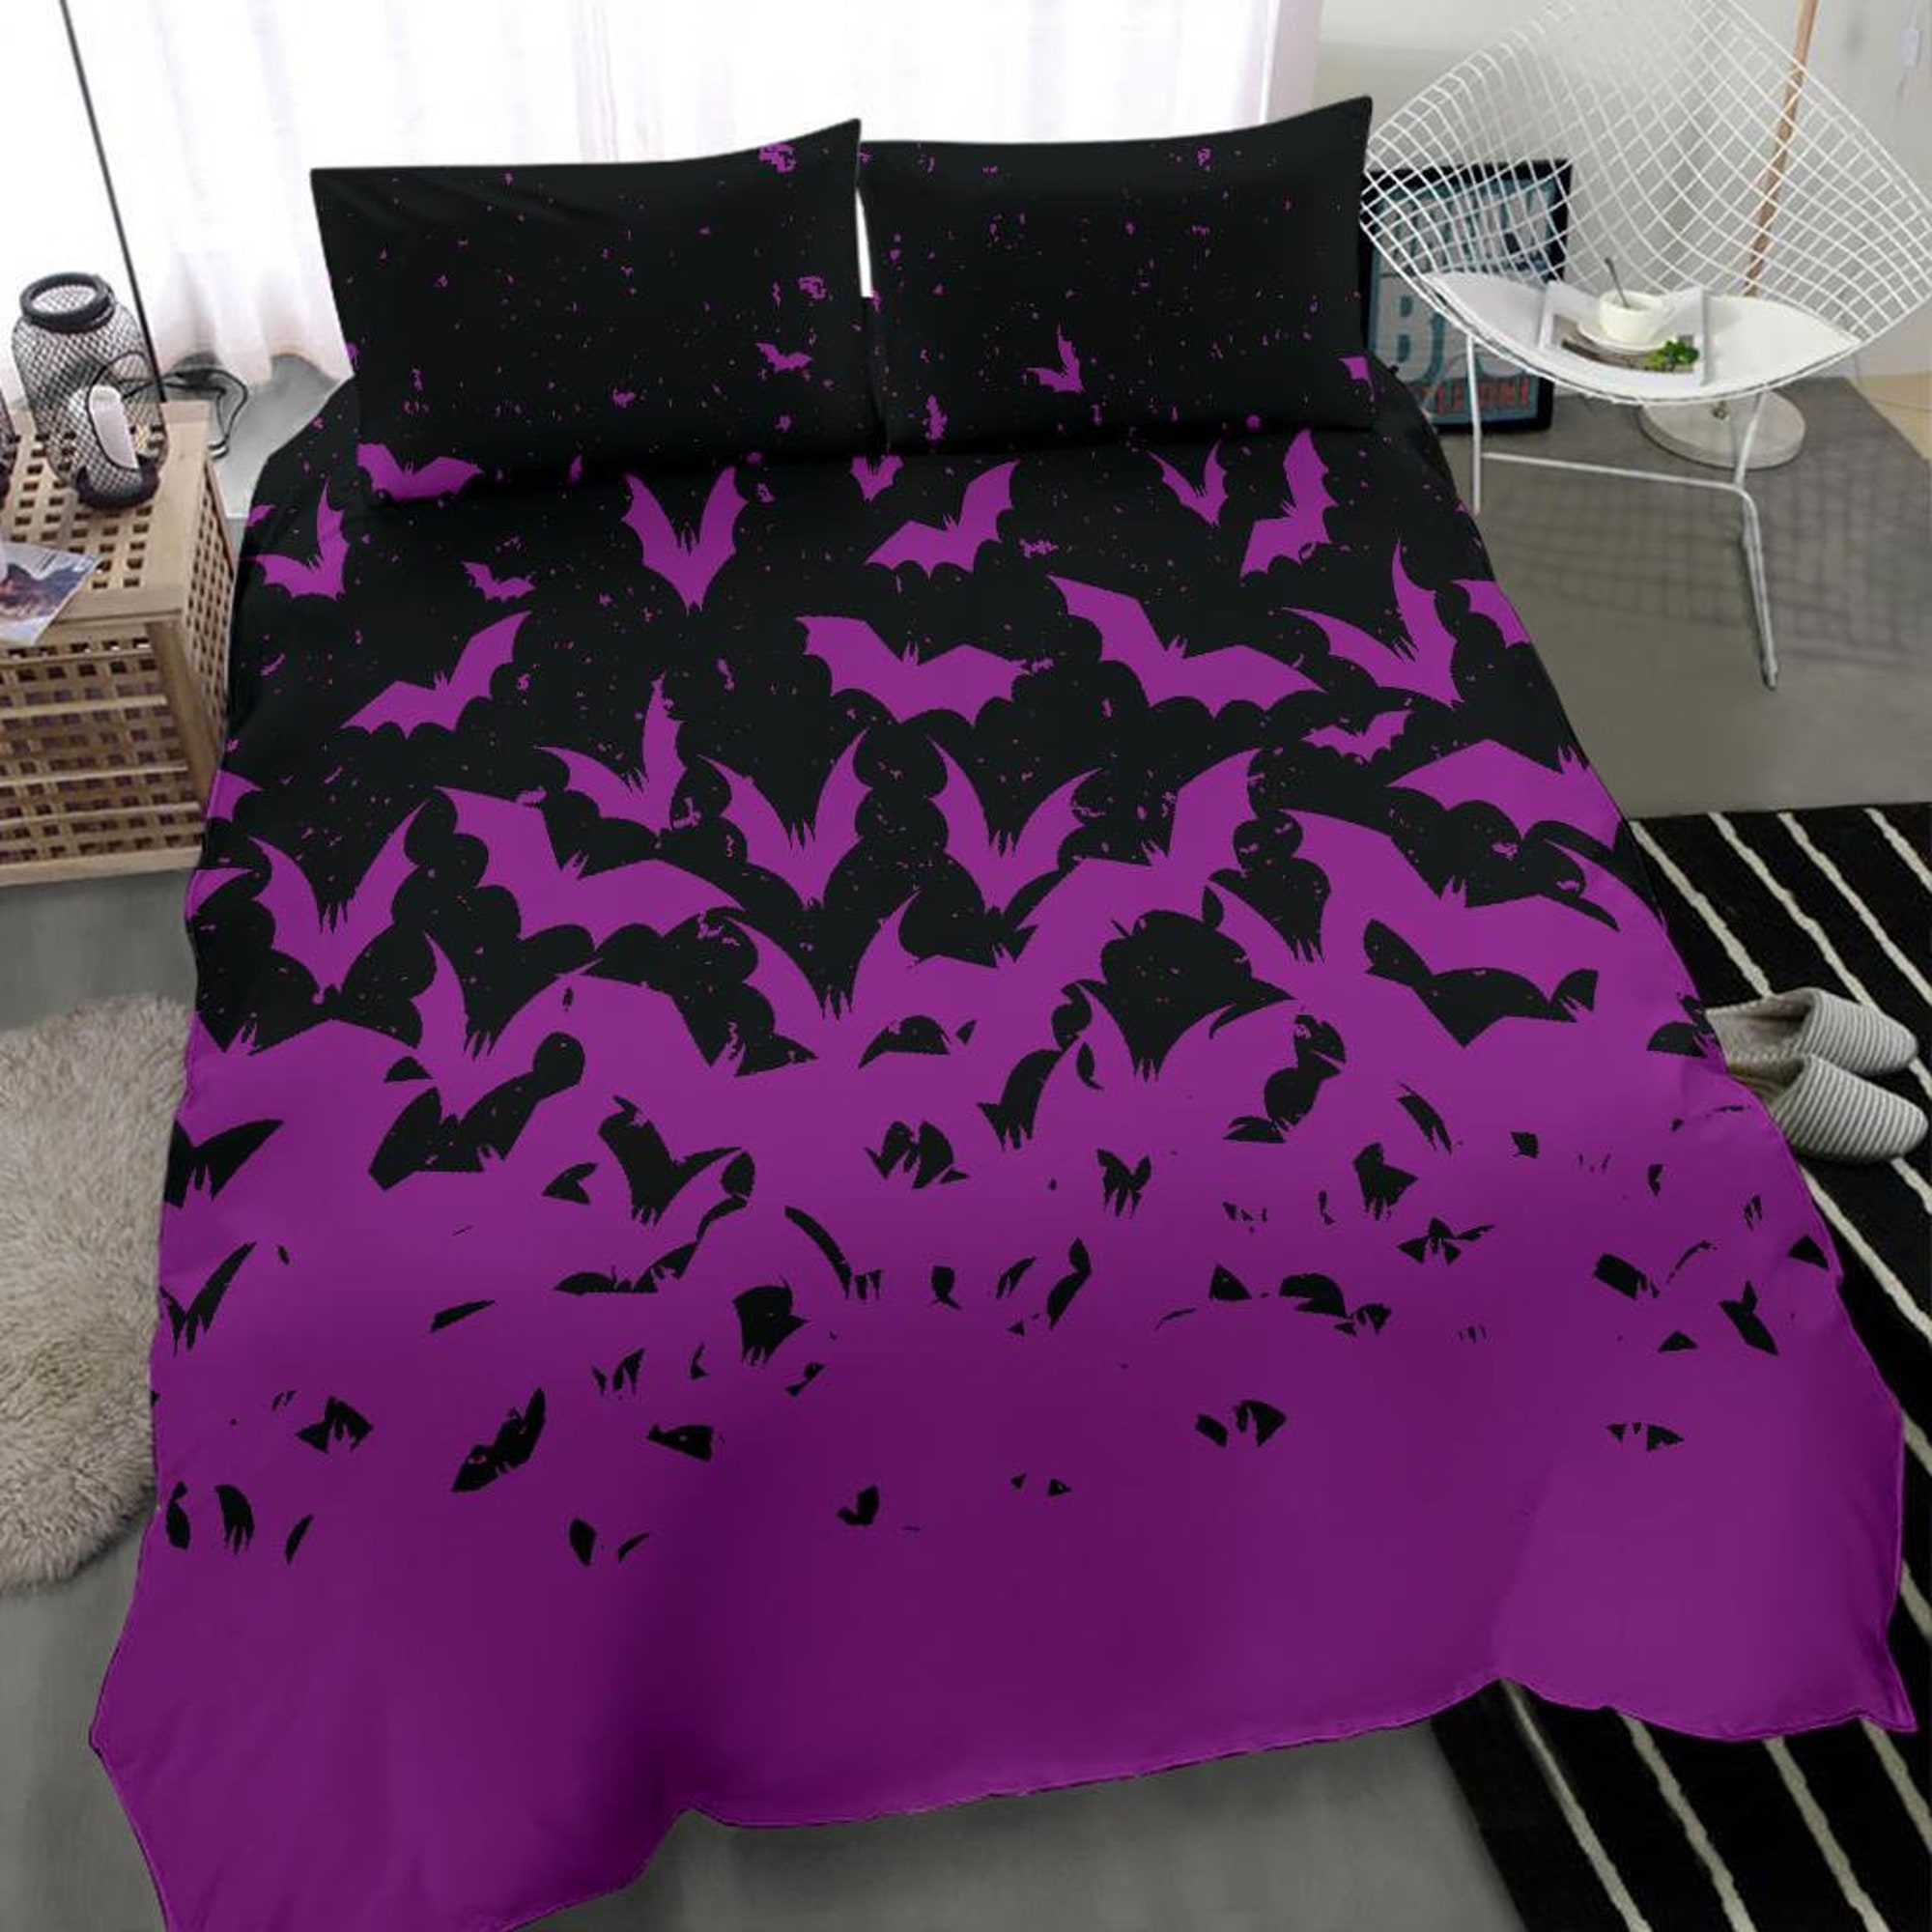 Gothic Bedding Gothic  Duvet Cover - Purple Bats Gothic Bedding Set Decor Bedding Sets